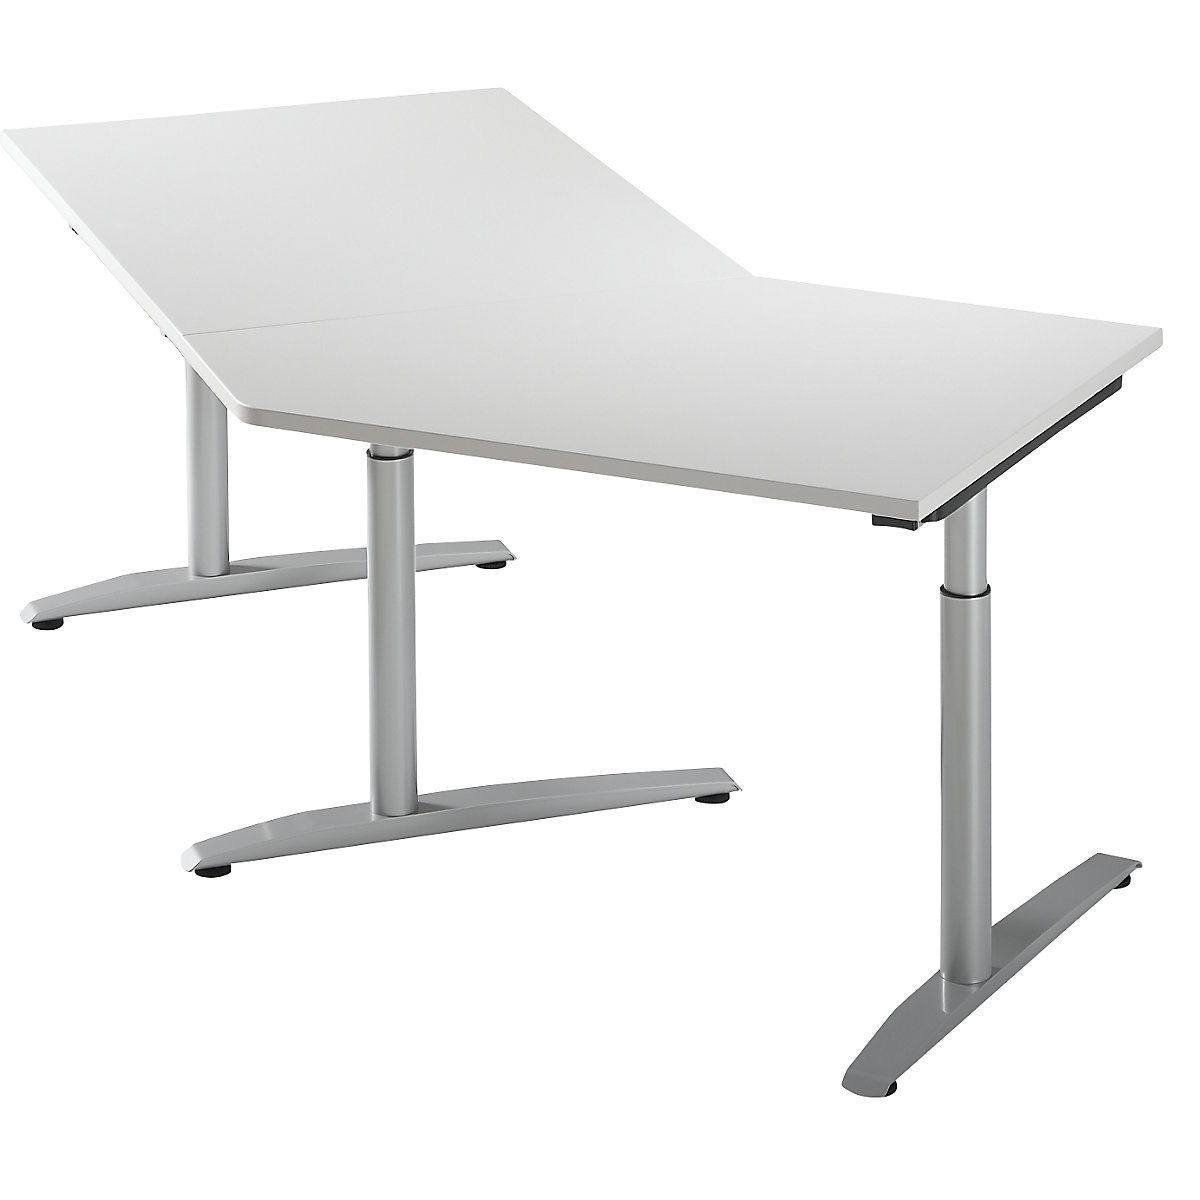 Kiegészítő asztal, magasságállítás 650 - 850 mm között HANNA